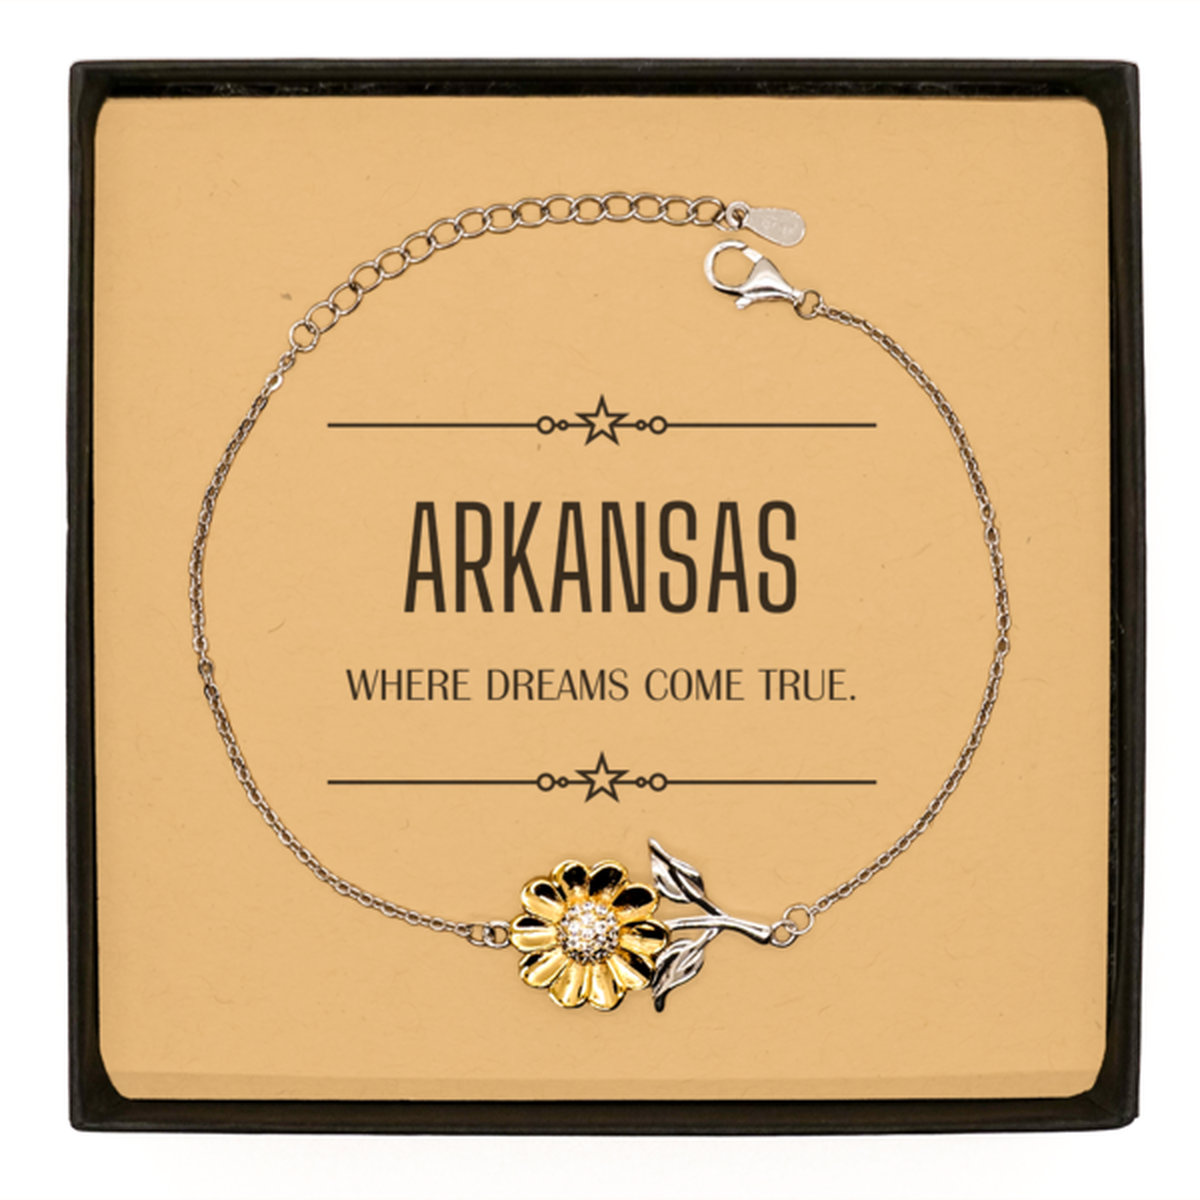 Love Arkansas State Sunflower Bracelet, Arkansas Where dreams come true, Birthday Inspirational Gifts For Arkansas Men, Women, Friends